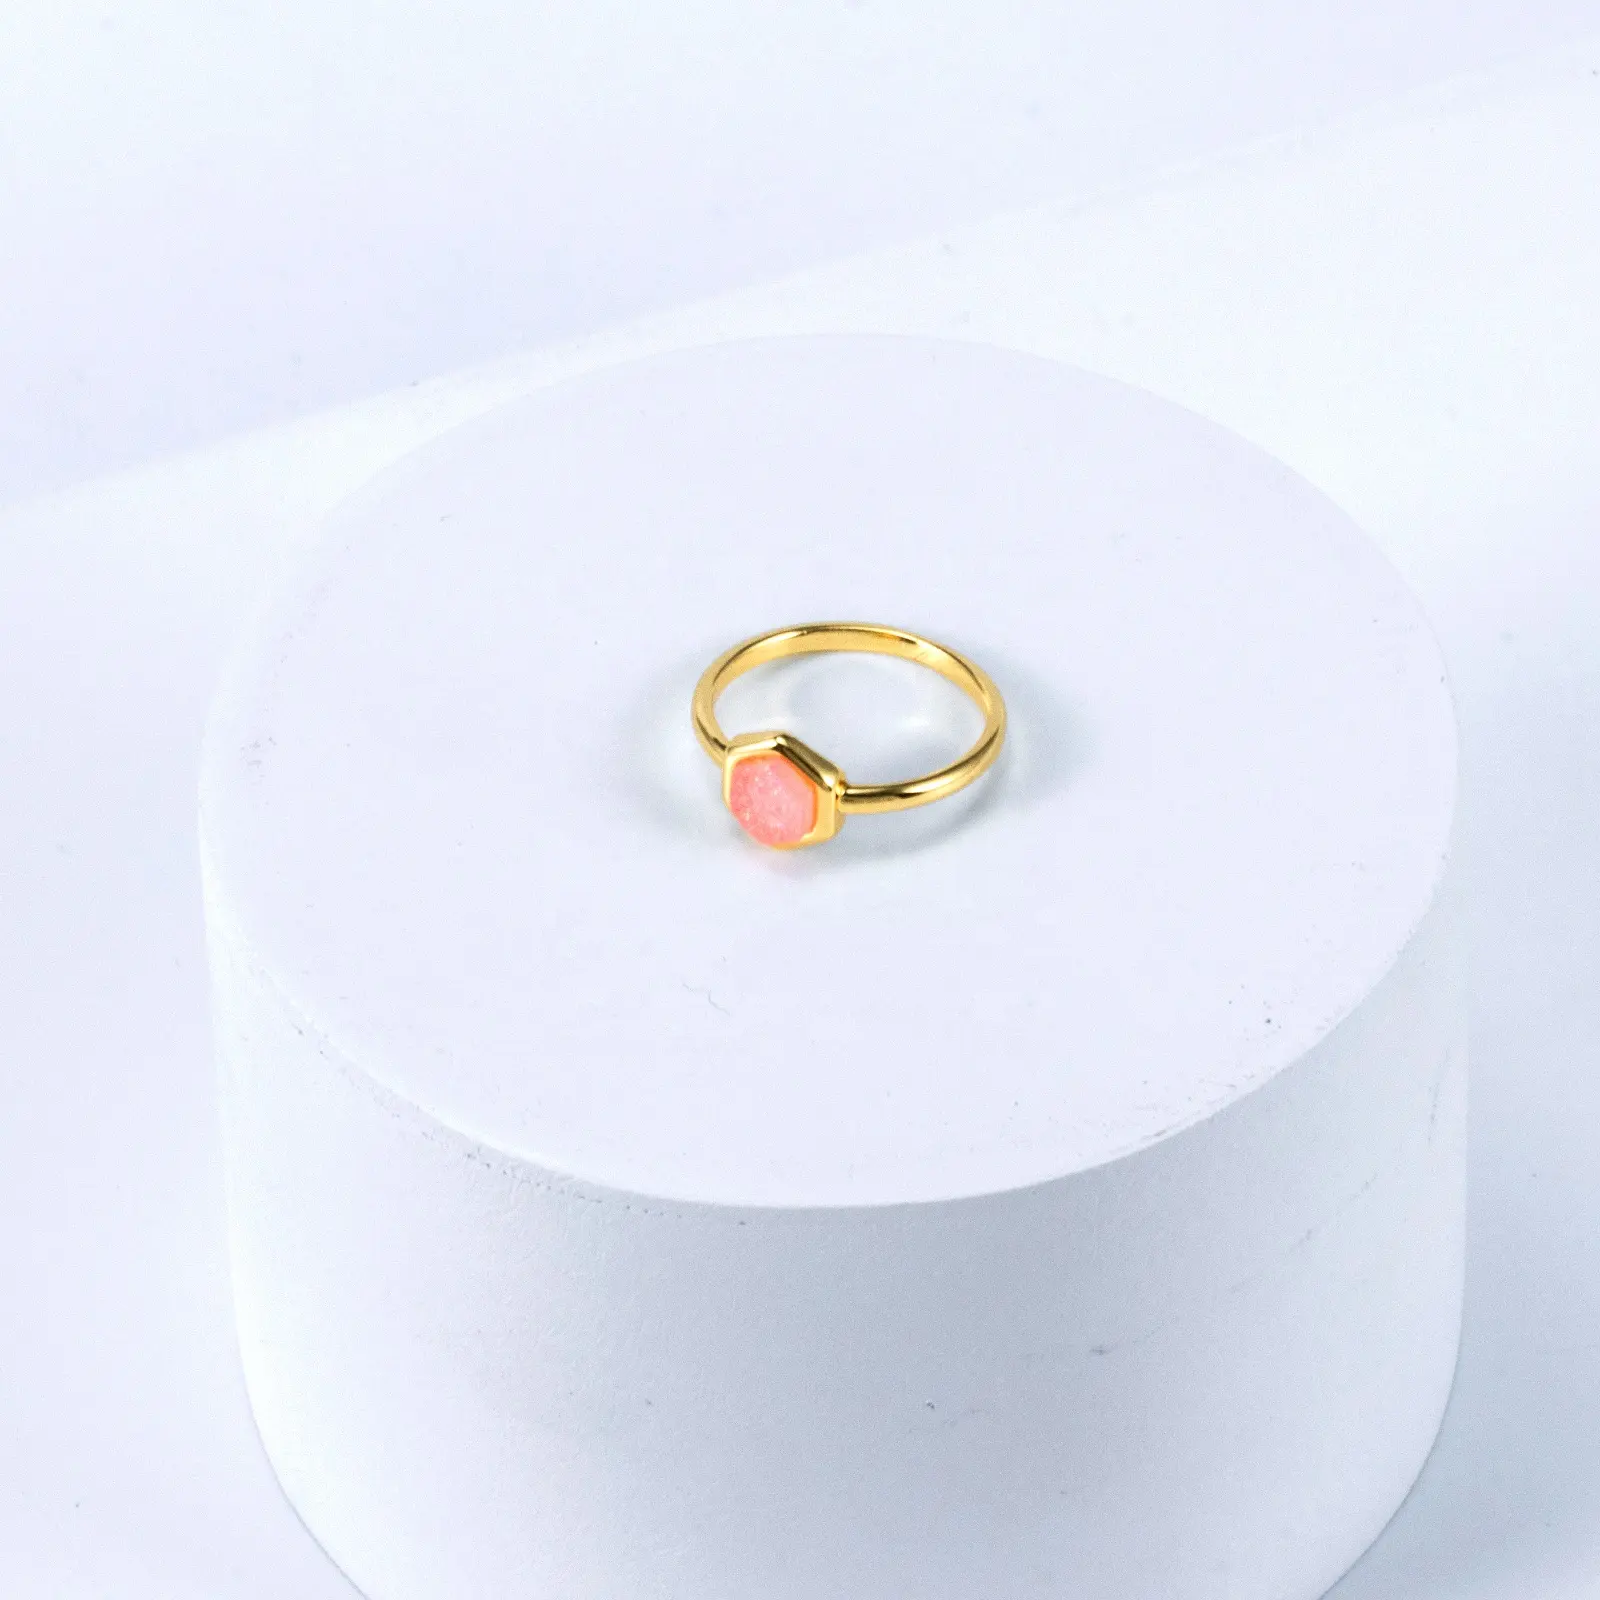 สีสันหินธรรมชาติแหวนชุดหกเหลี่ยมหินแหวนเครื่องประดับผู้หญิง 14 พันทองชุบสแตนเลสทองเหลืองเครื่องประดับแหวน